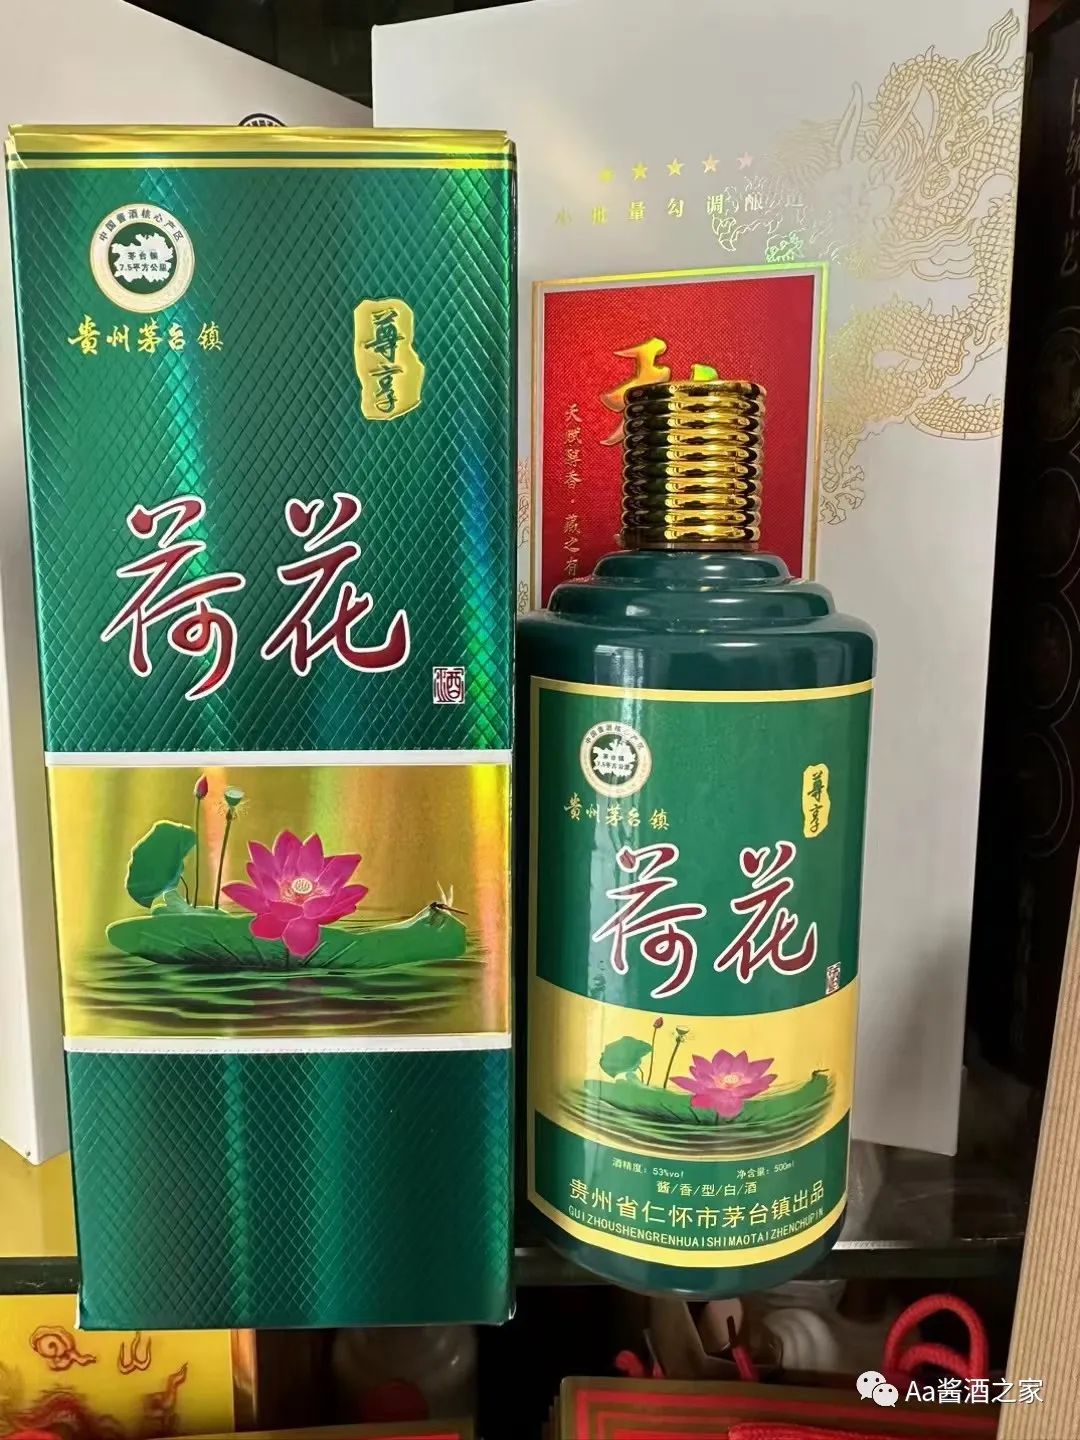 中国贵州荷花酒53度图片